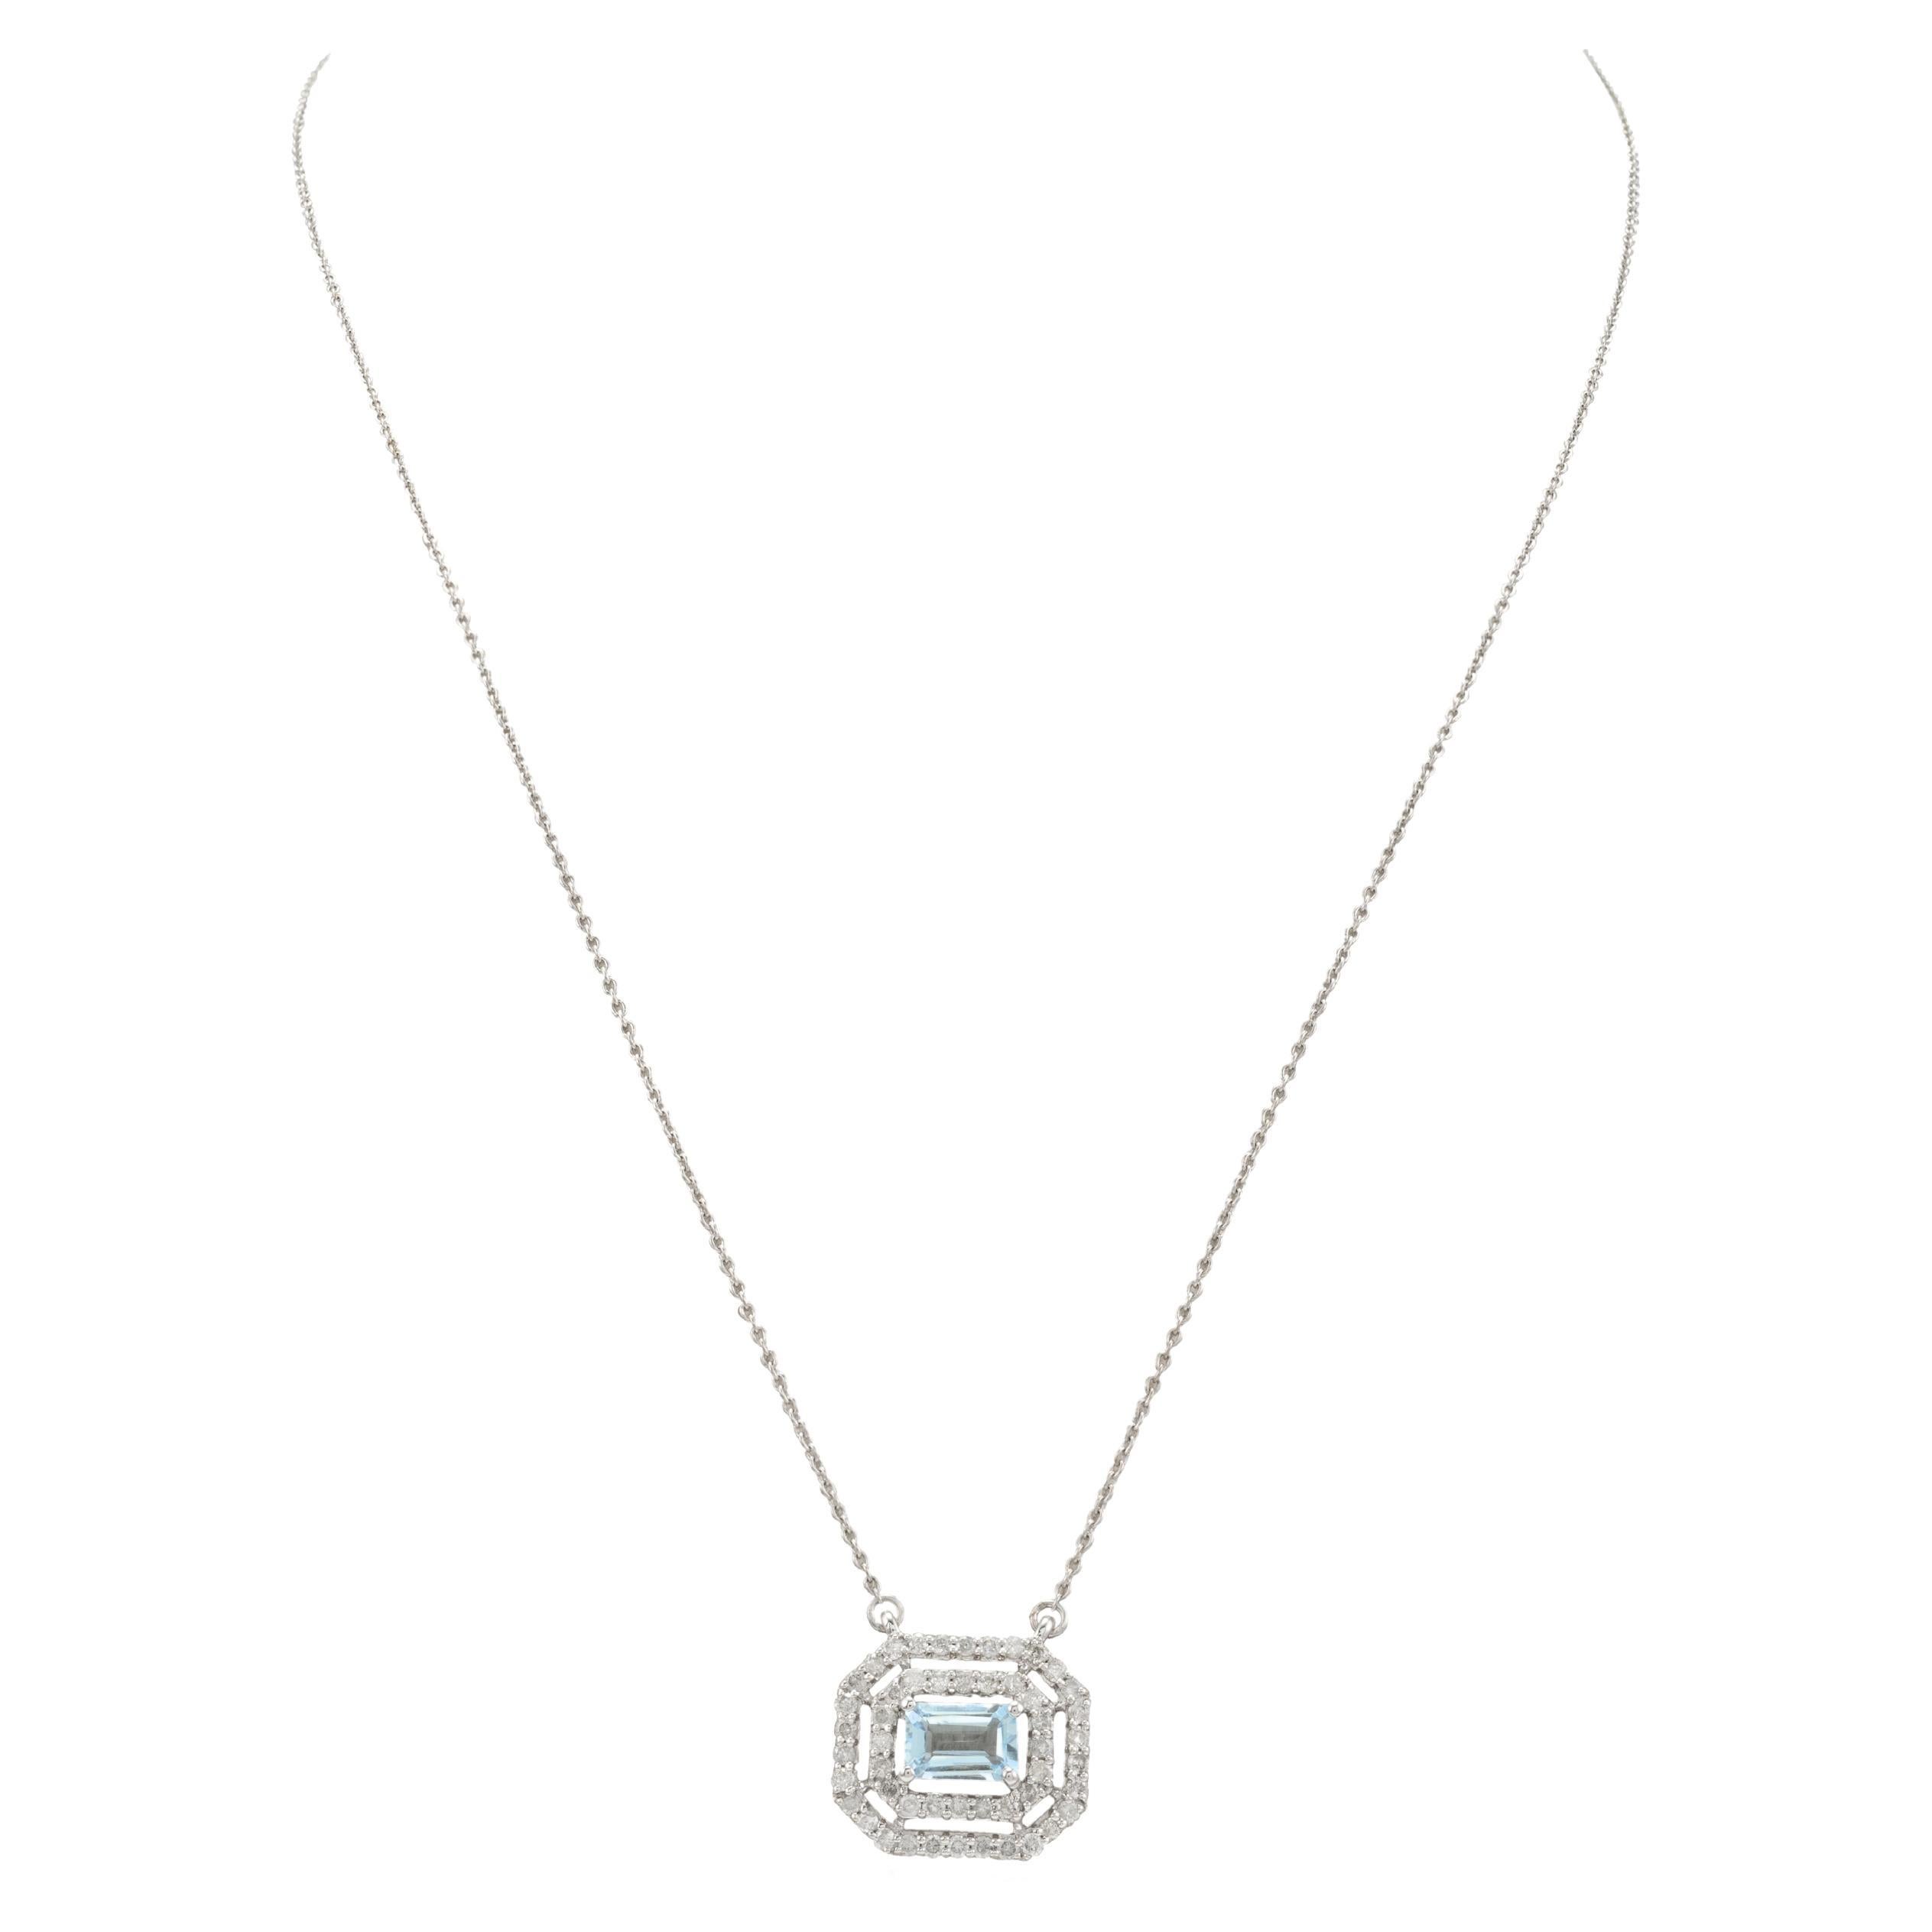 Collier à chaîne d'aigue-marine avec diamants de tous les jours, taille octogonale, en or blanc massif 14k